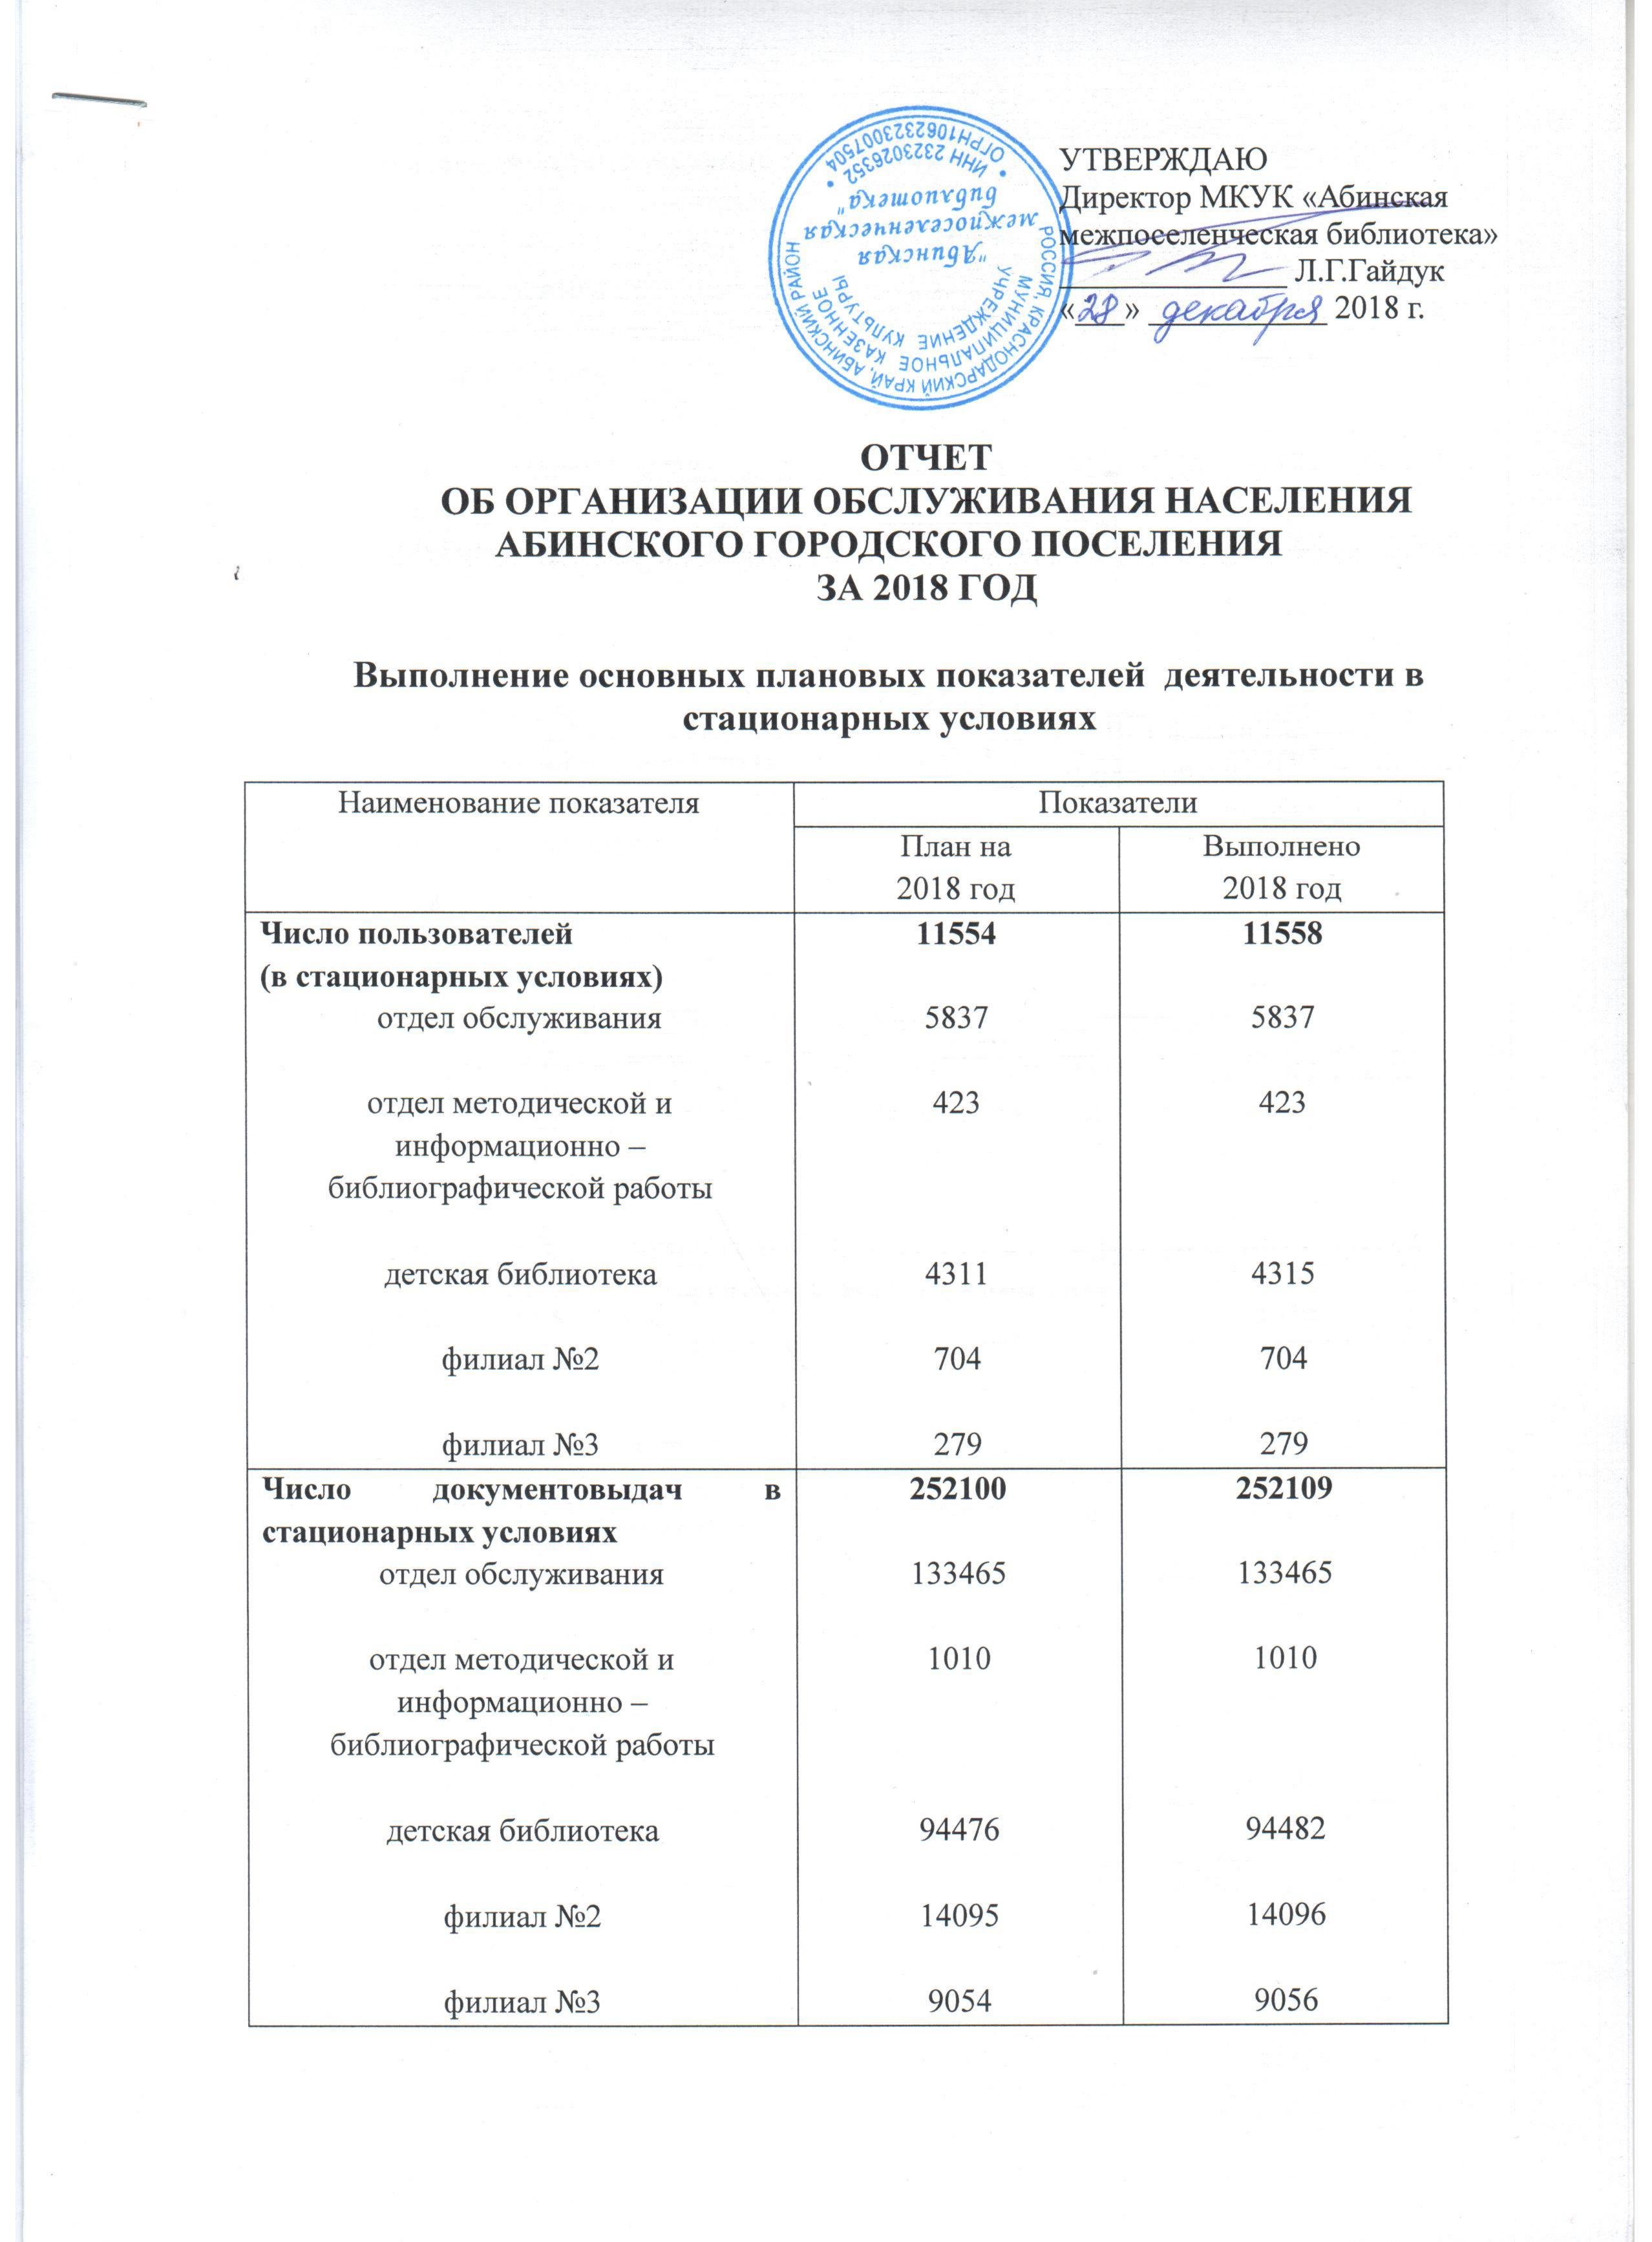 Отчет об организации обслуживания населения Абинского городского поселения за 2018 год